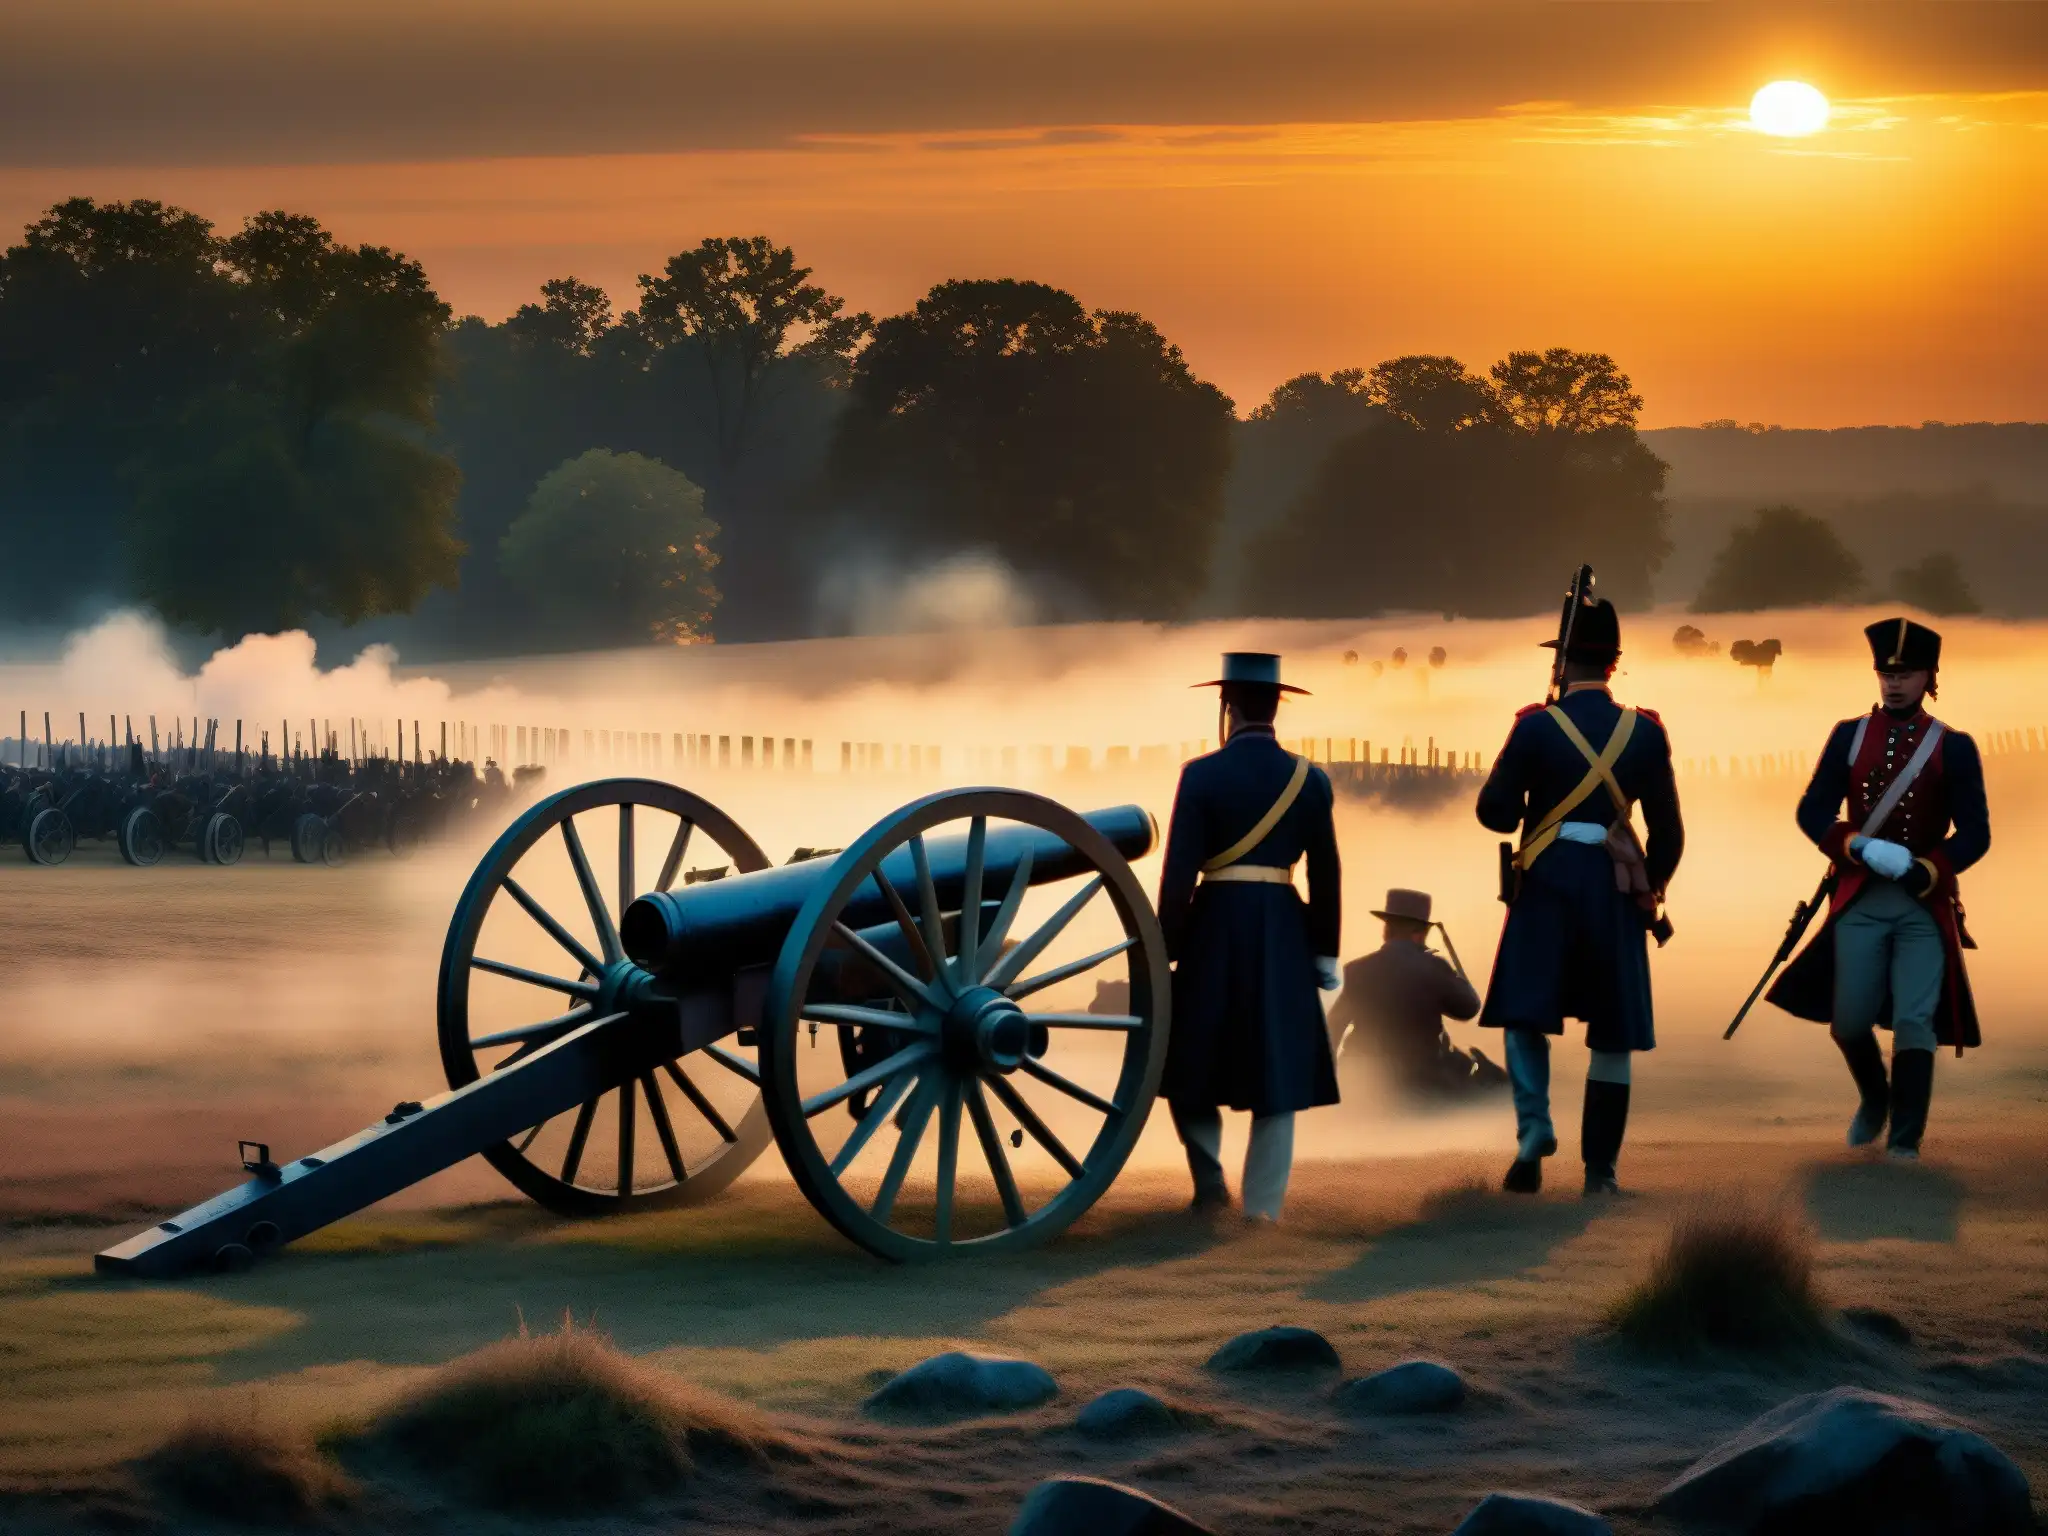 Apariciones en campo de guerra: Siluetas de soldados y cañones en la neblina del atardecer en Gettysburg, evocando solemnidad histórica